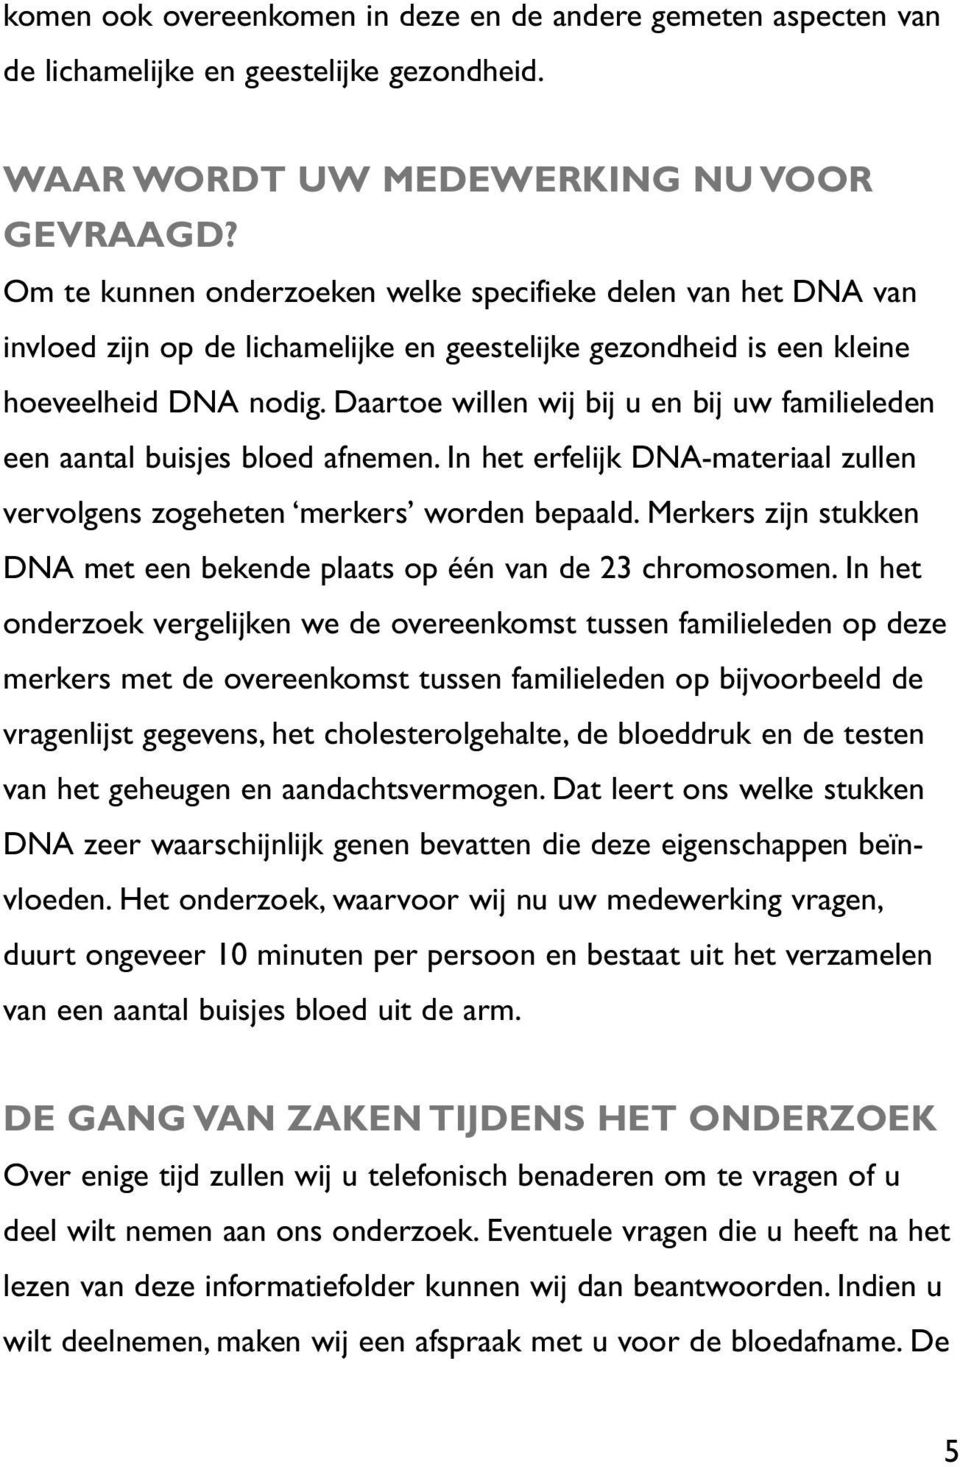 daartoe willen wij bij u en bij uw familieleden een aantal buisjes bloed afnemen.in het erfelijk DNA-materiaal zullen vervolgens zogeheten merkers worden bepaald.